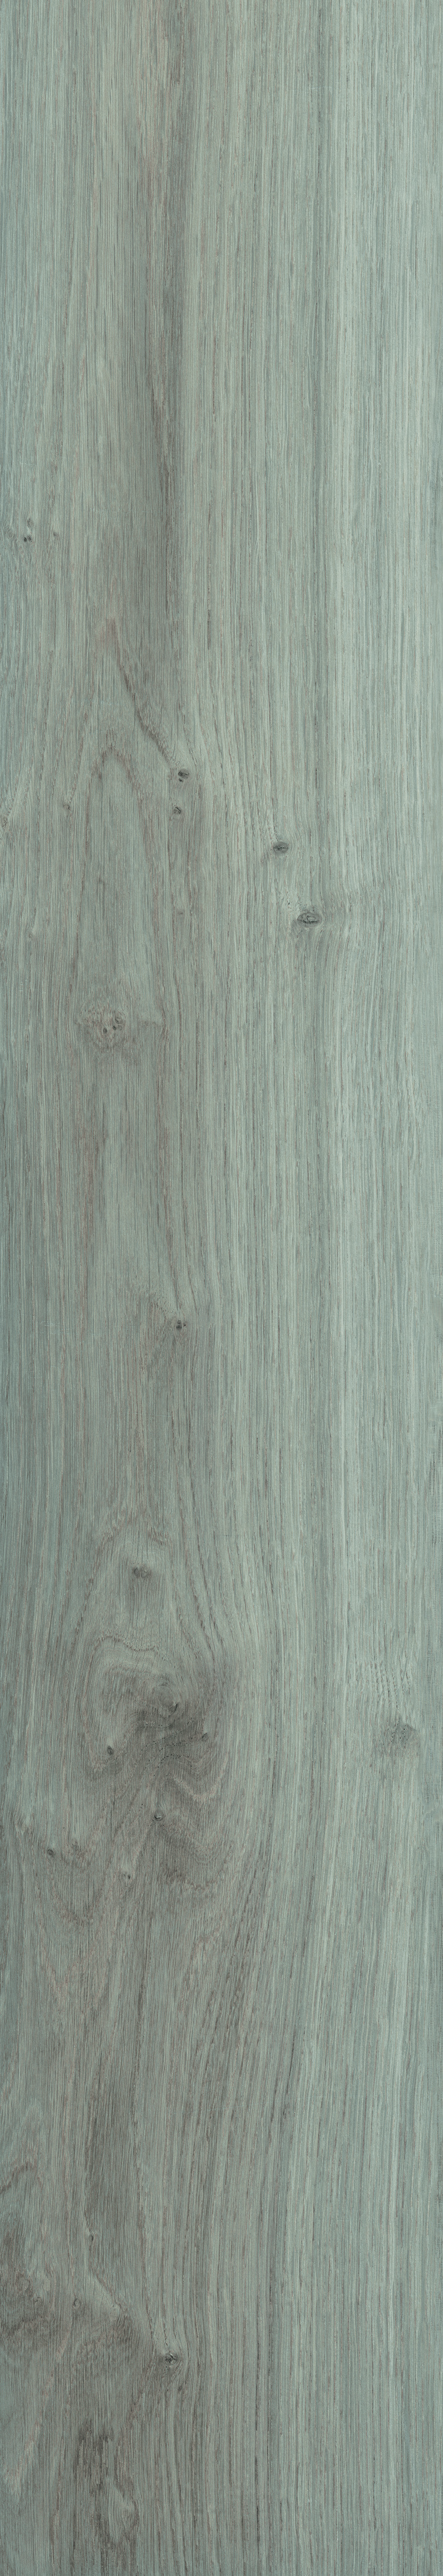 0-md bl wood grigio.jpg